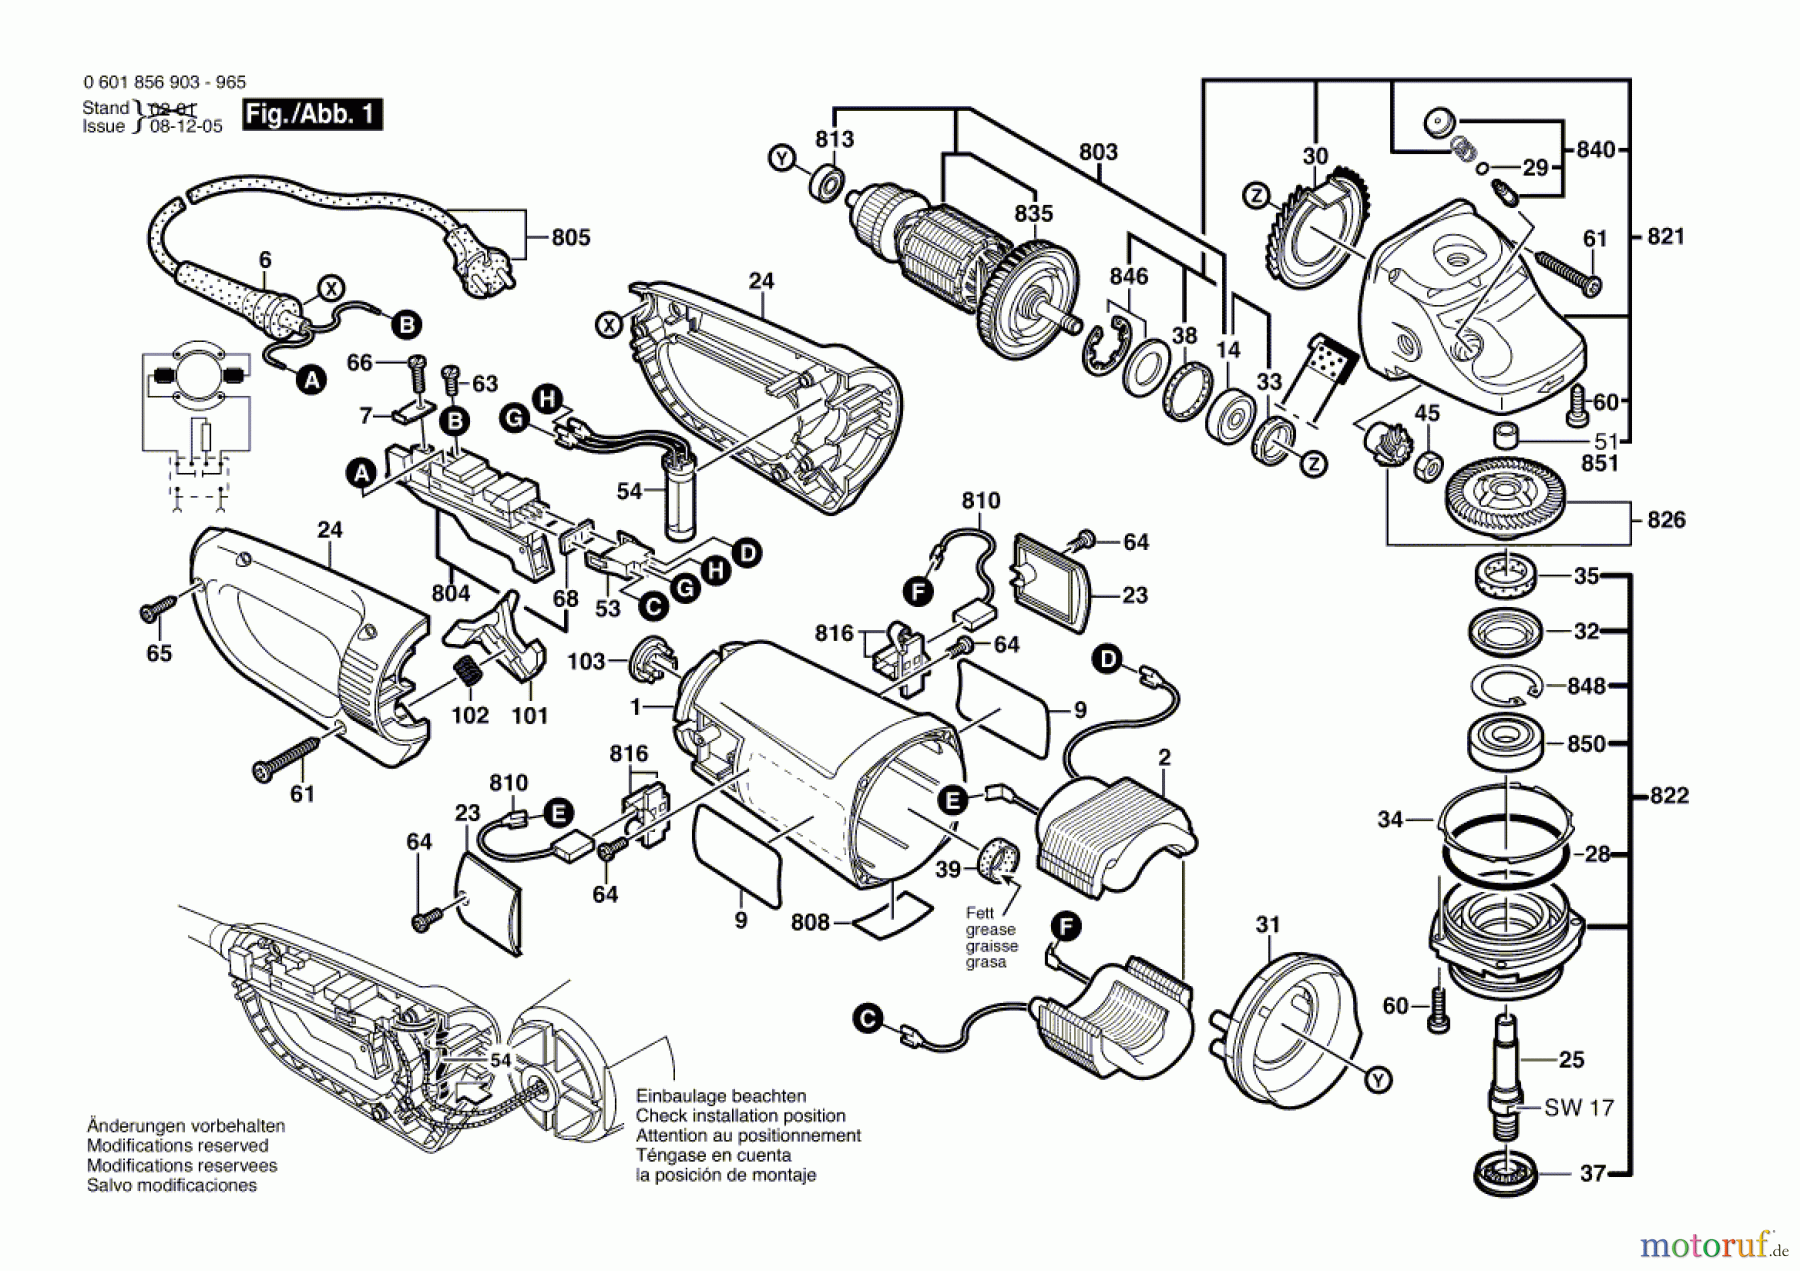  Bosch Werkzeug Winkelschleifer GWS 26-230 JB Seite 1